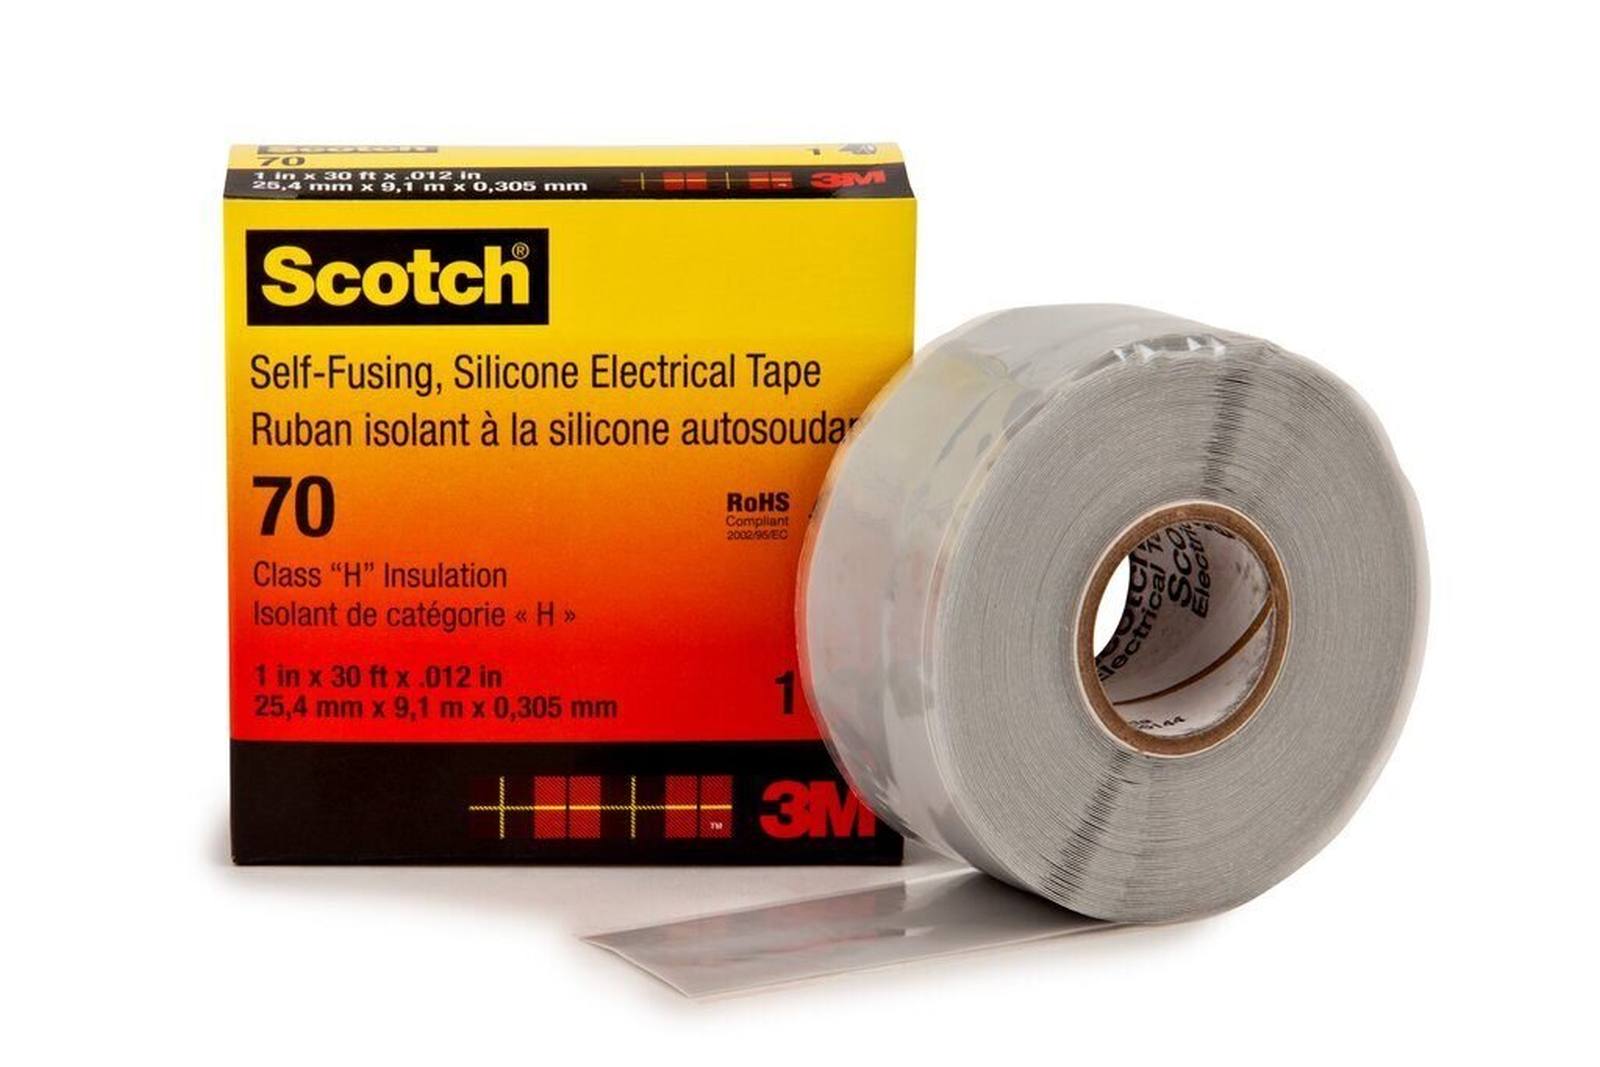 3M Scotch 70 Zelfdichtende tape van siliconenrubber, 25 mm x 9 m